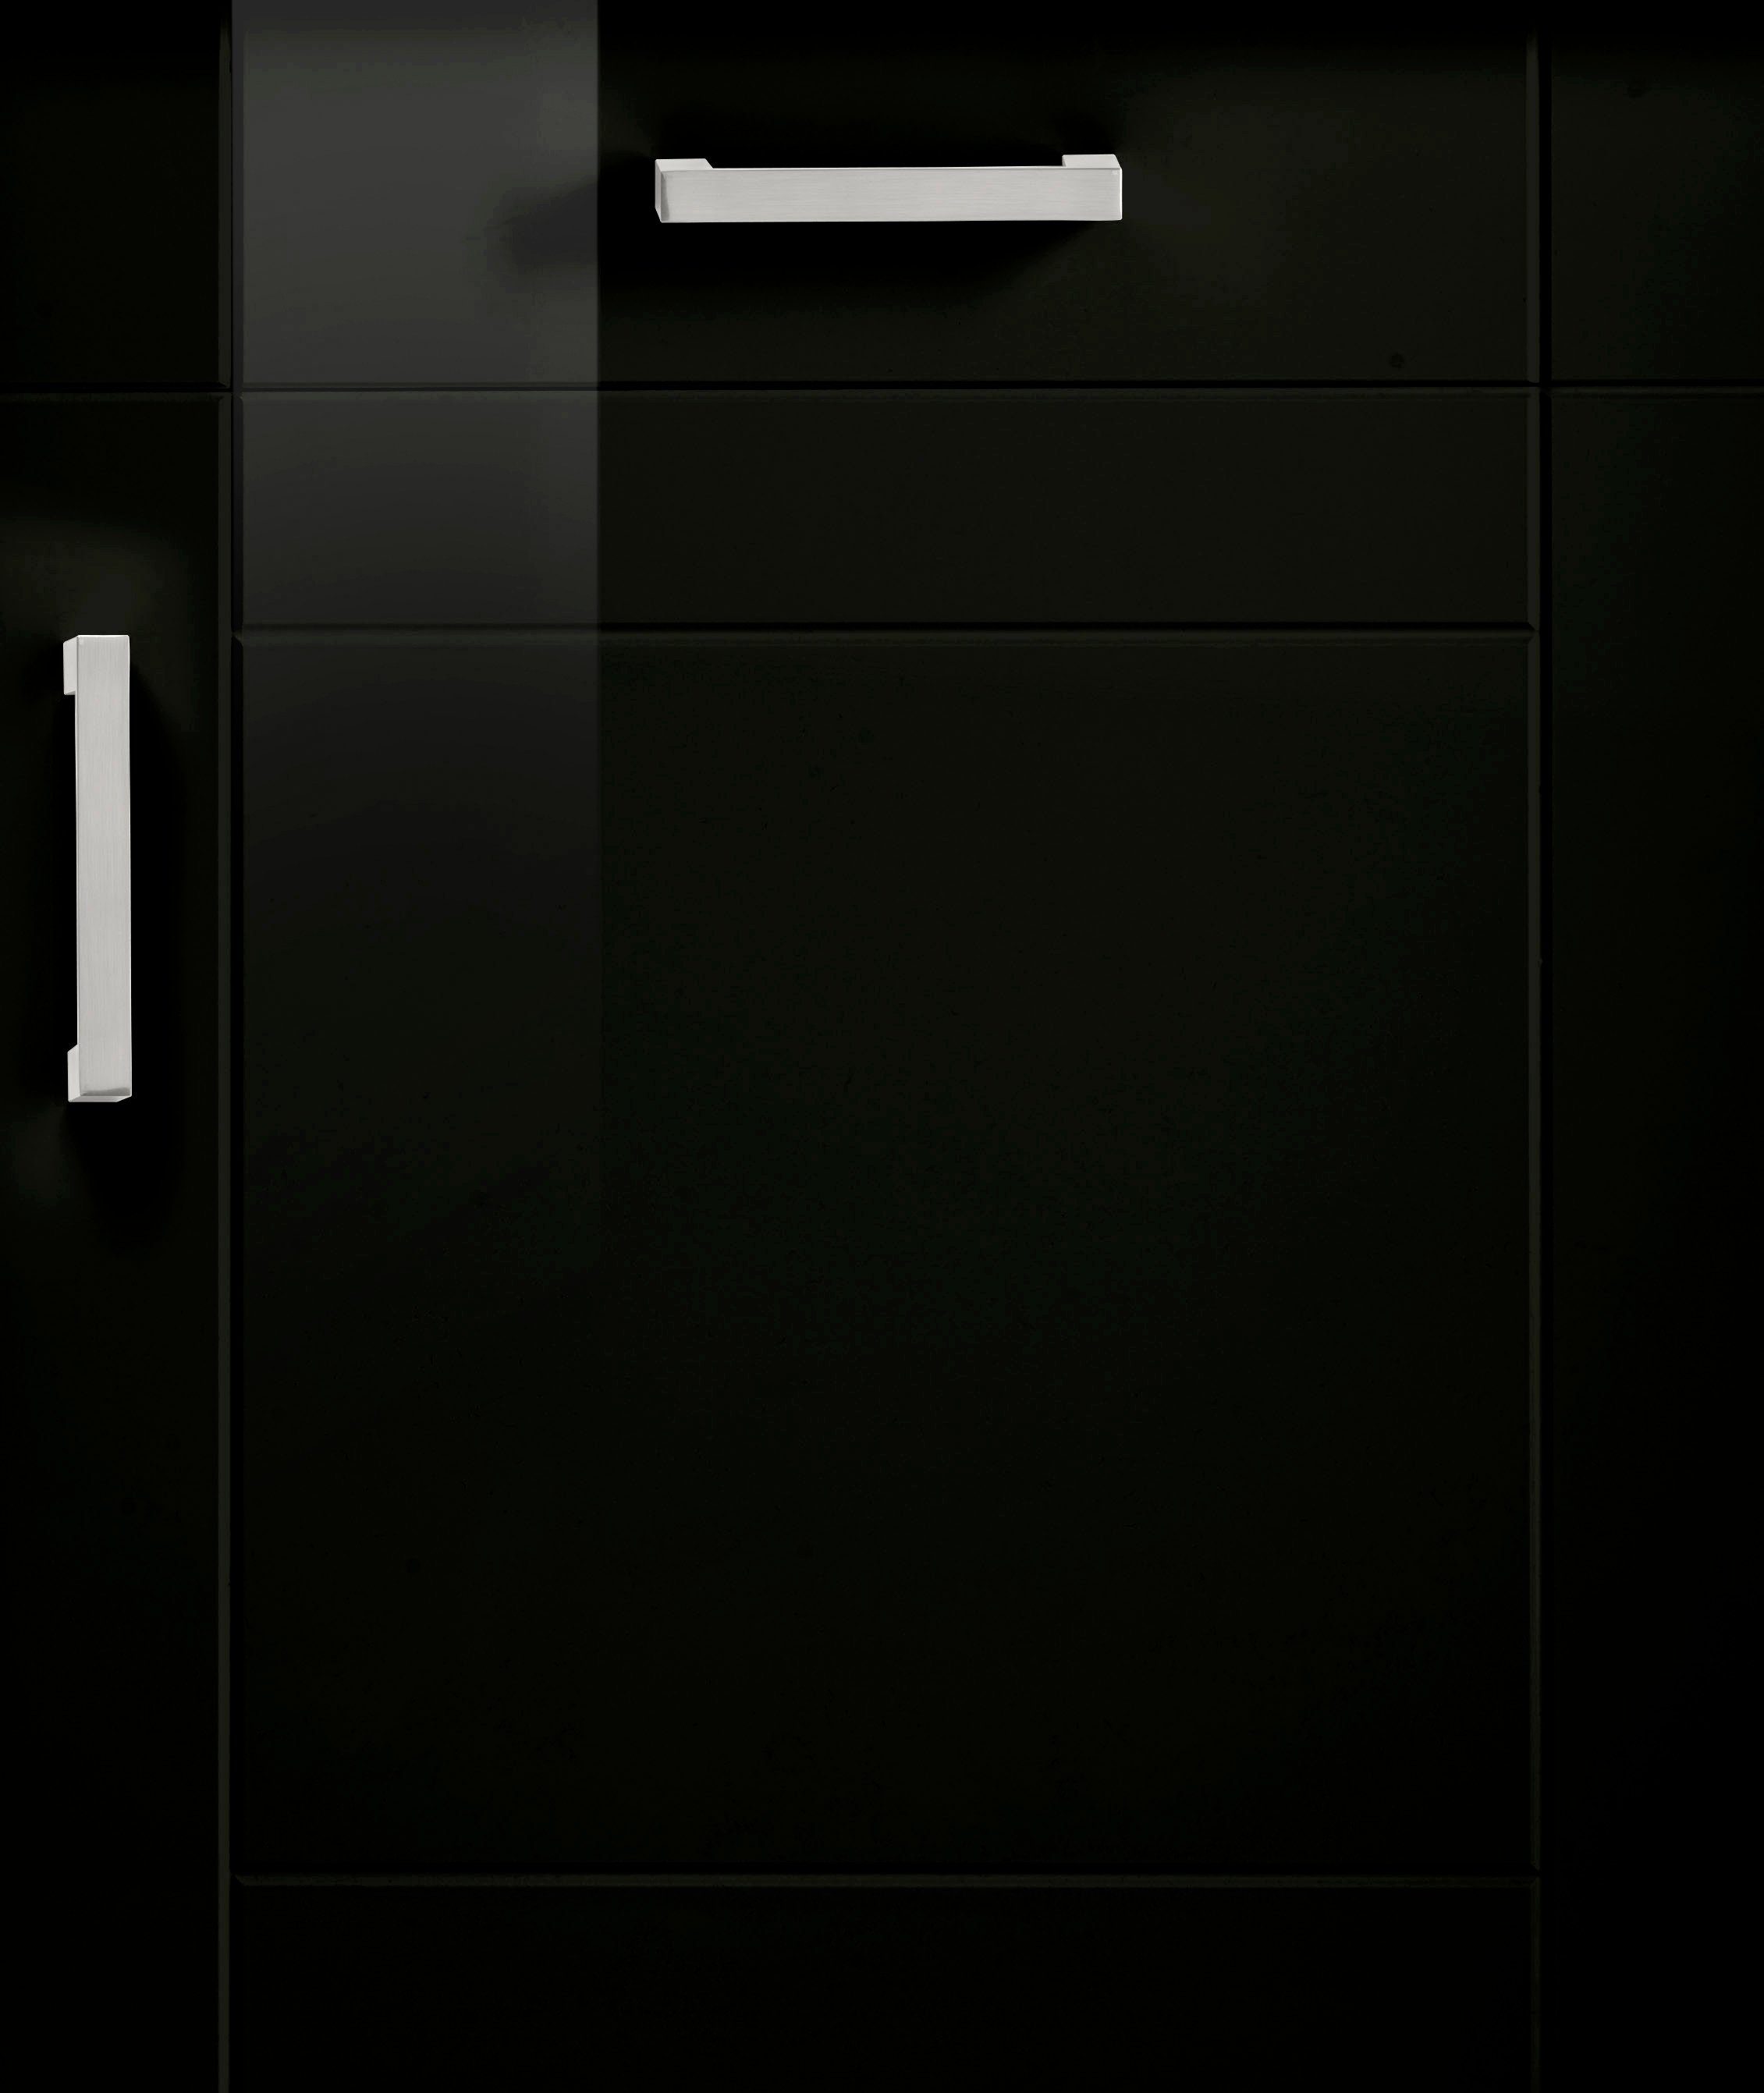 HELD MÖBEL Unterschrank breit, schwarz 3 wotaneiche | MDF Schubkästen, Tinnum 3 Metallgriffe, Türen Fronten, 180 cm